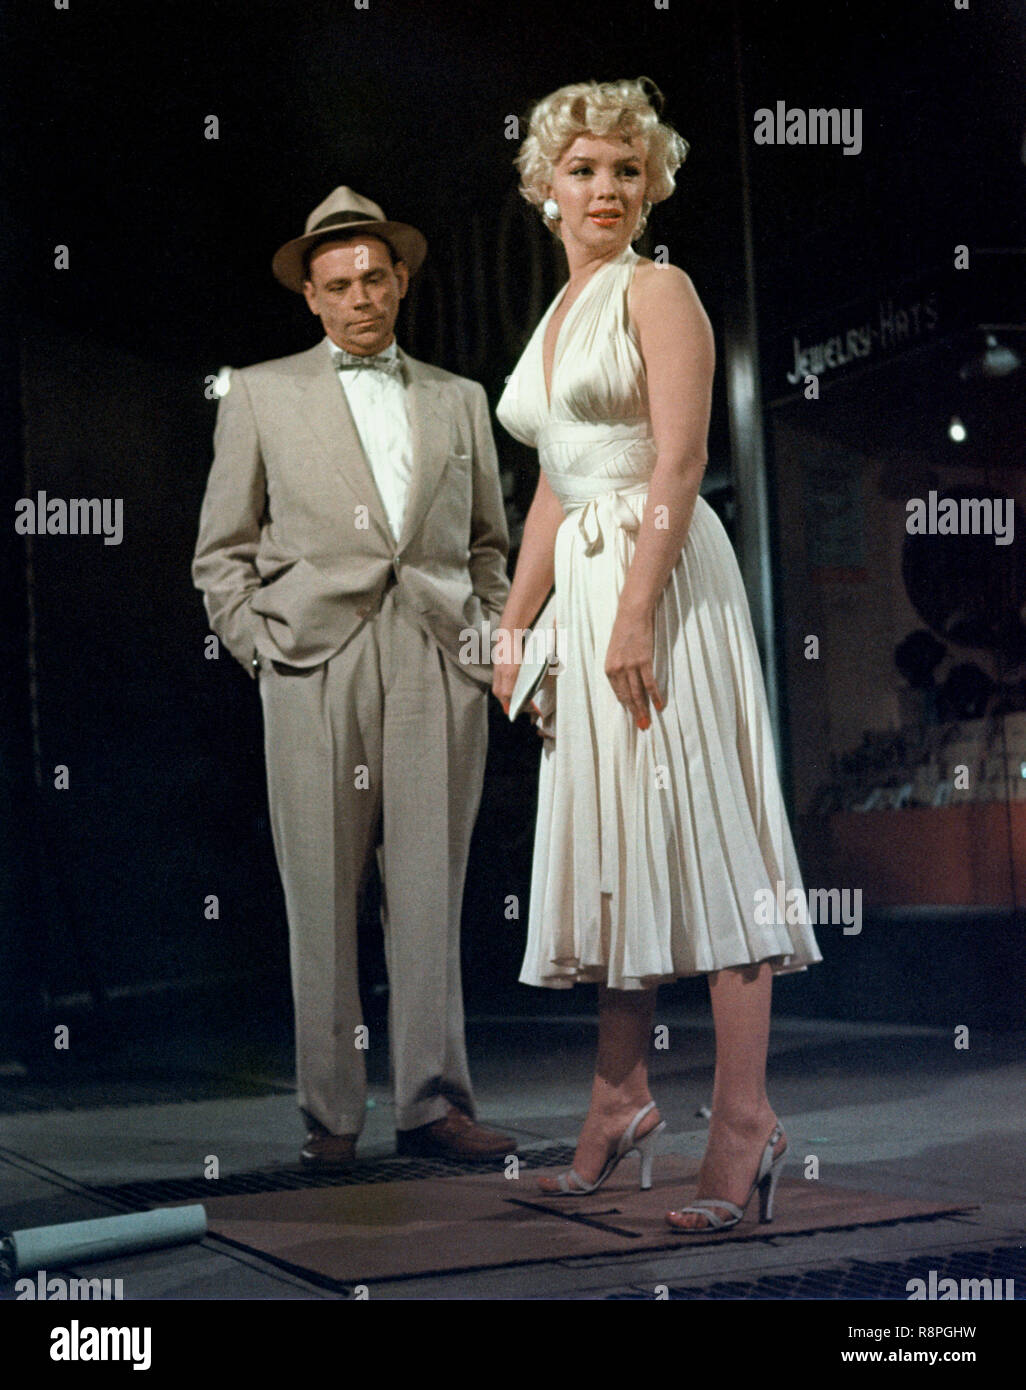 Tom Ewell, Marilyn Monroe, "Das verflixte Siebte Jahr" (1955) Twentieth Century Fox Datei Referenz # 33635 578 THA Stockfoto